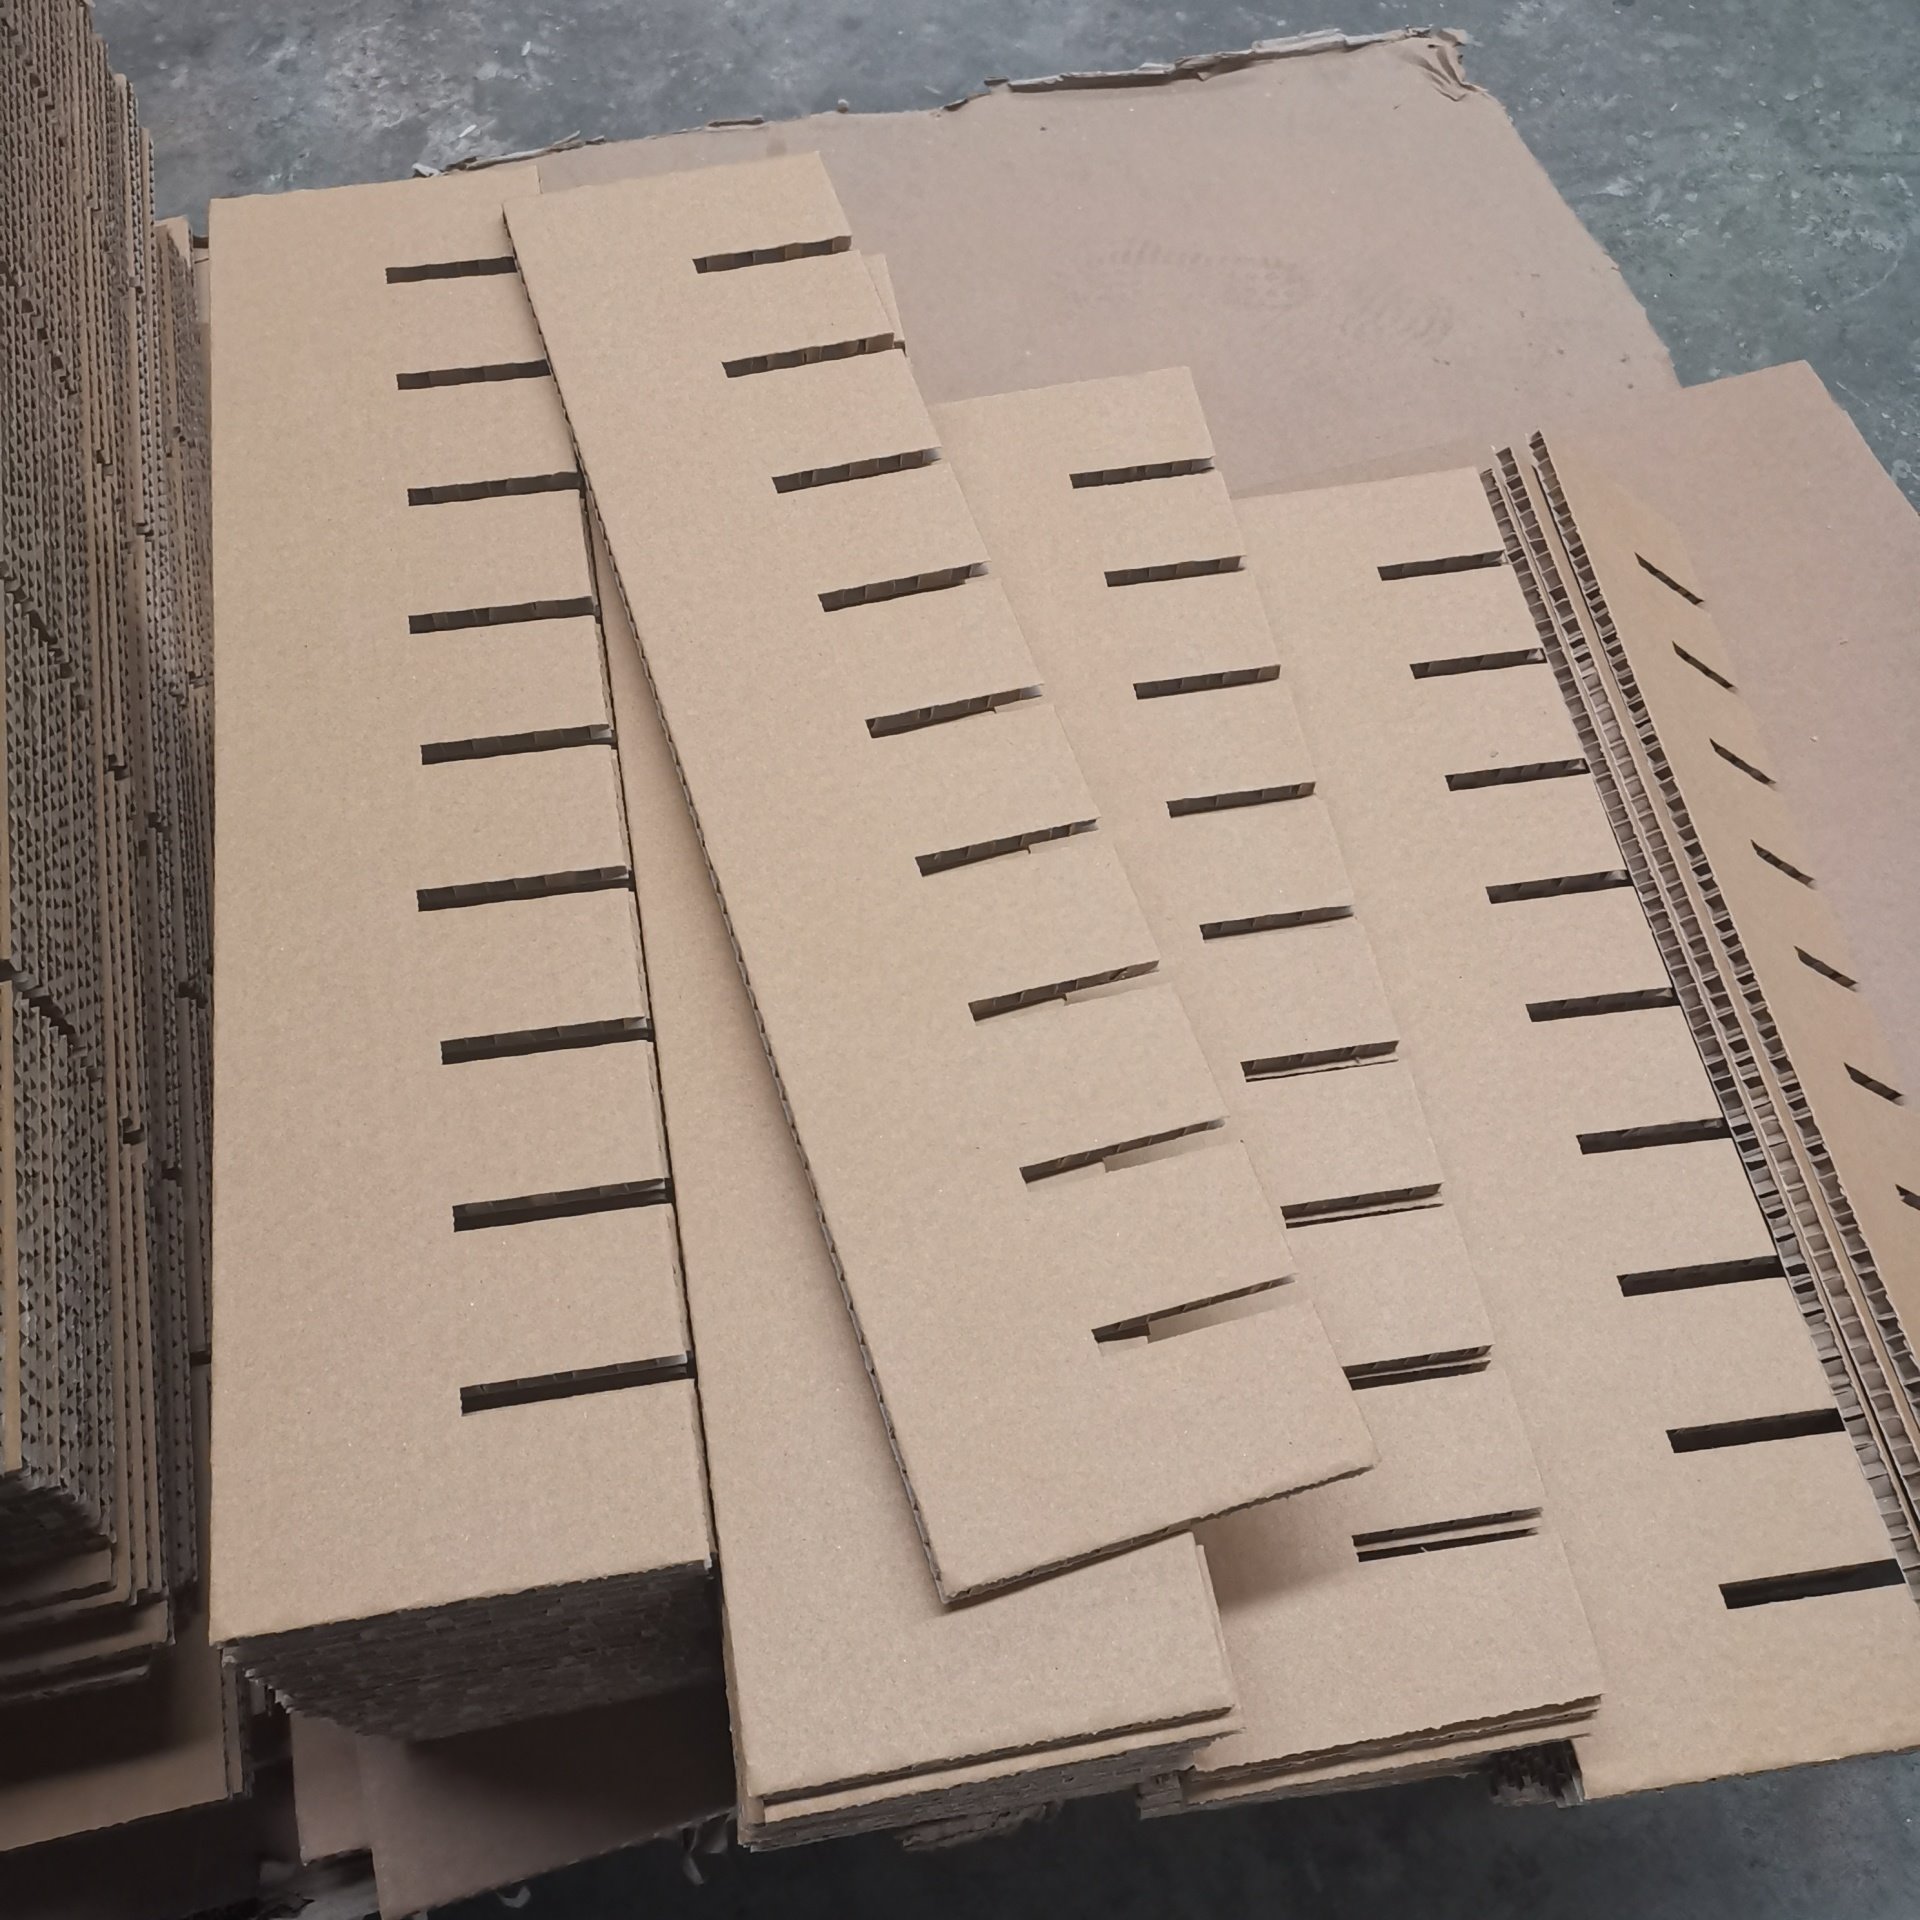 包装用蜂窝纸板内衬 可用于辅助包装材料 京东龙达图片